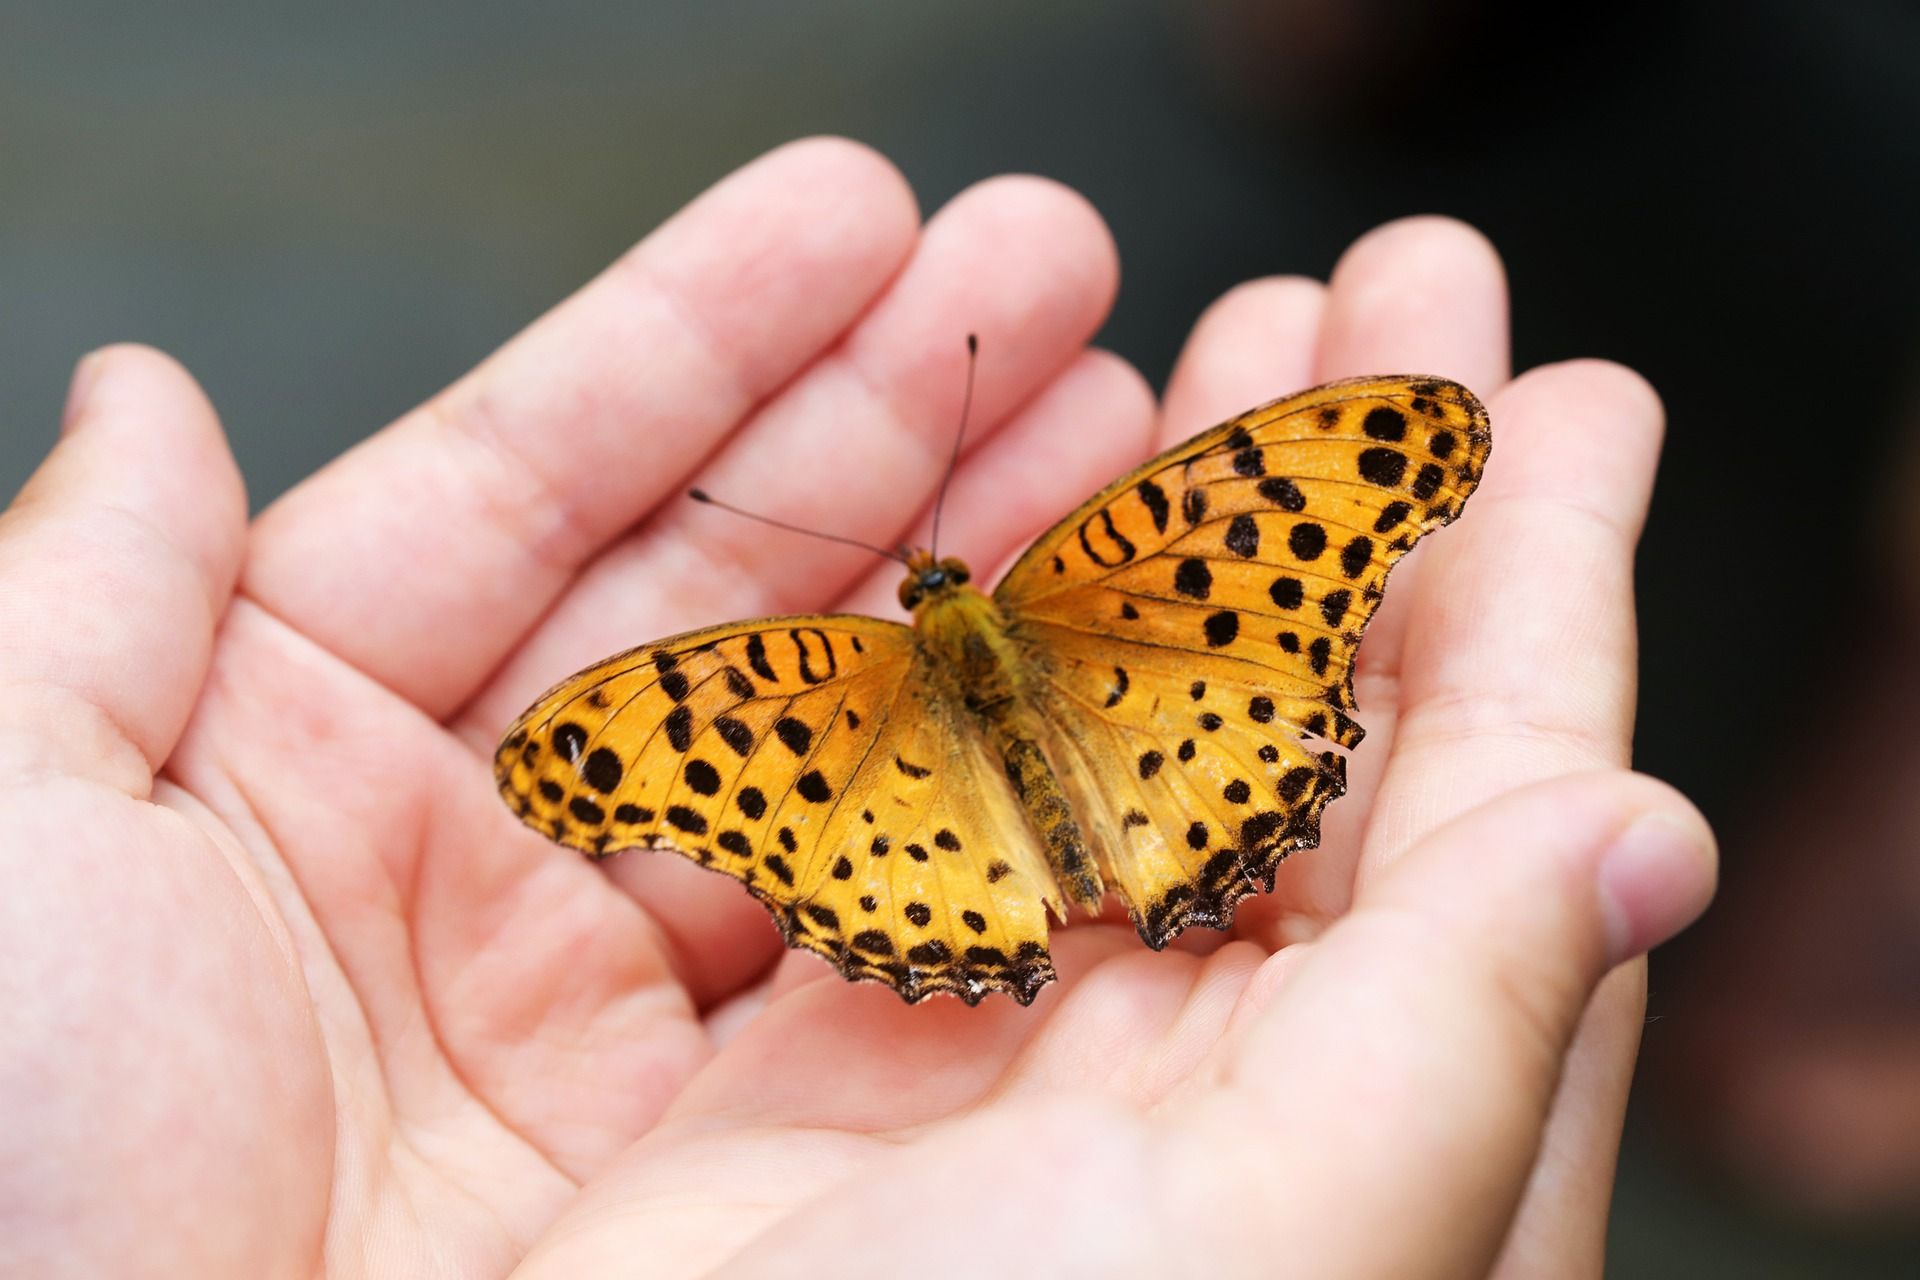 Budidaya Kupu-kupu sebagai Alternatif Bisnis Menjanjikan